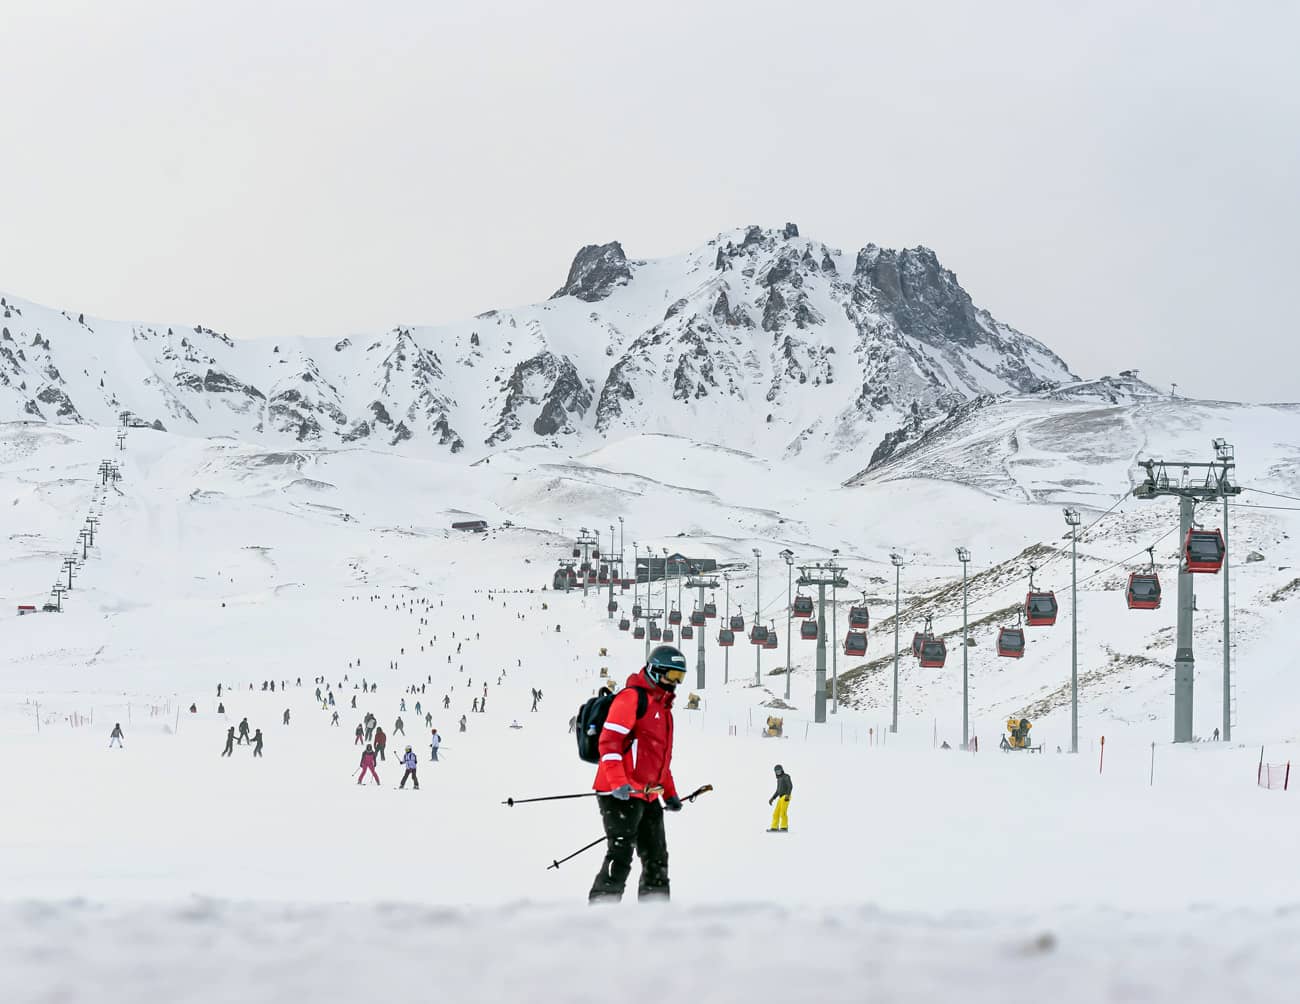 Ercİyes Ski Resort